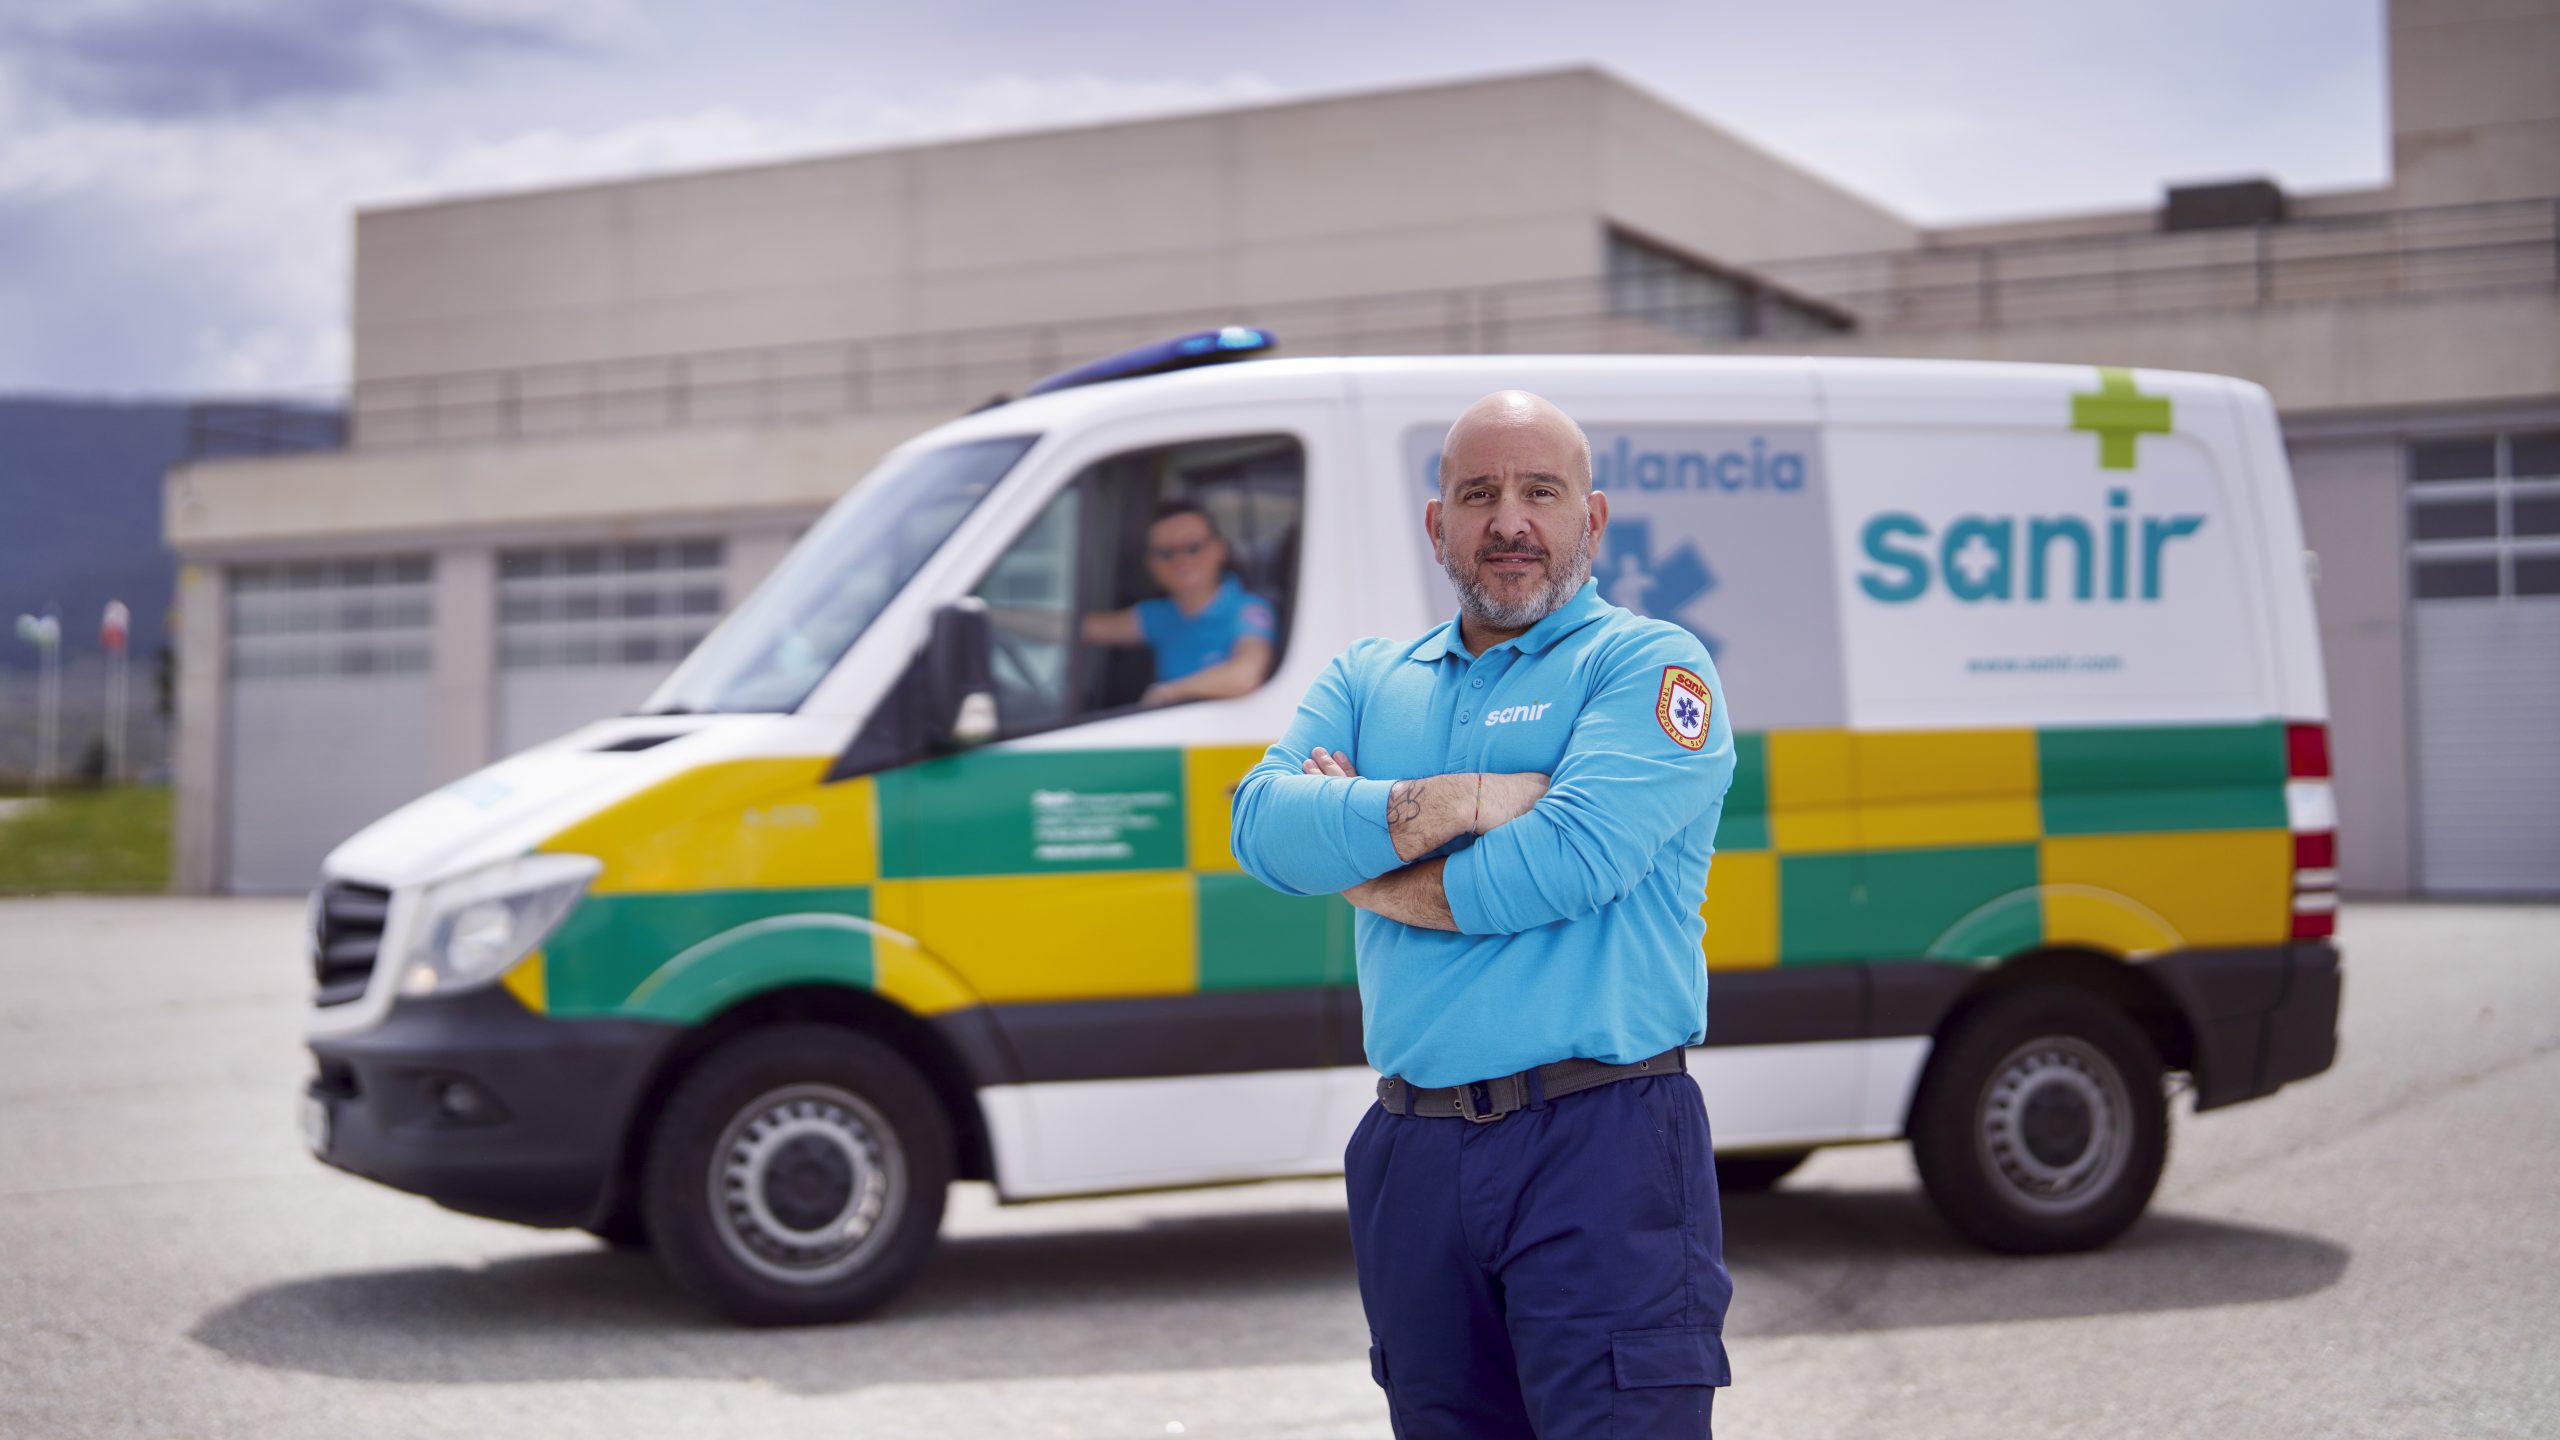 Uniforme y ambulancia para Sanir